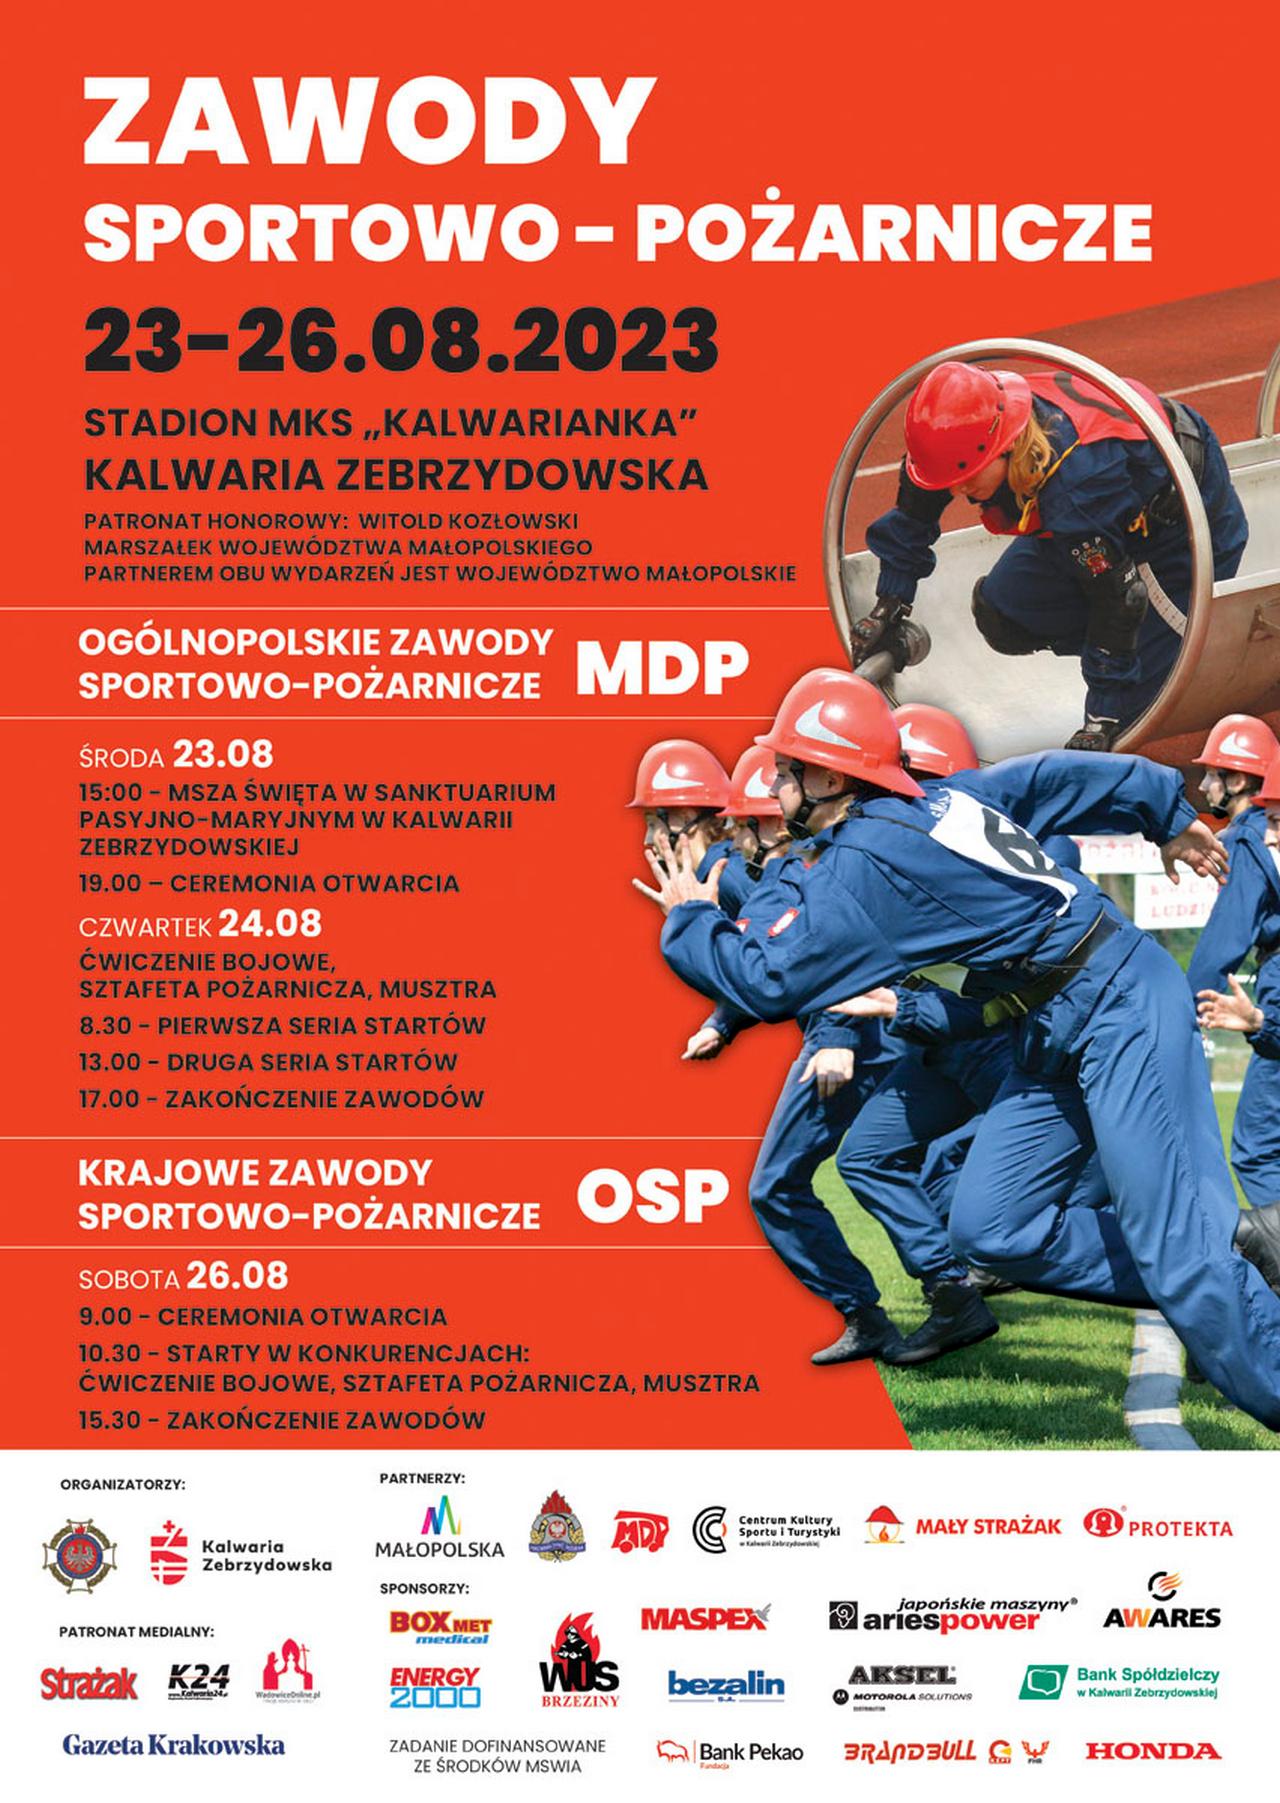 Zawody Sportowo-Pożarnicze 2023